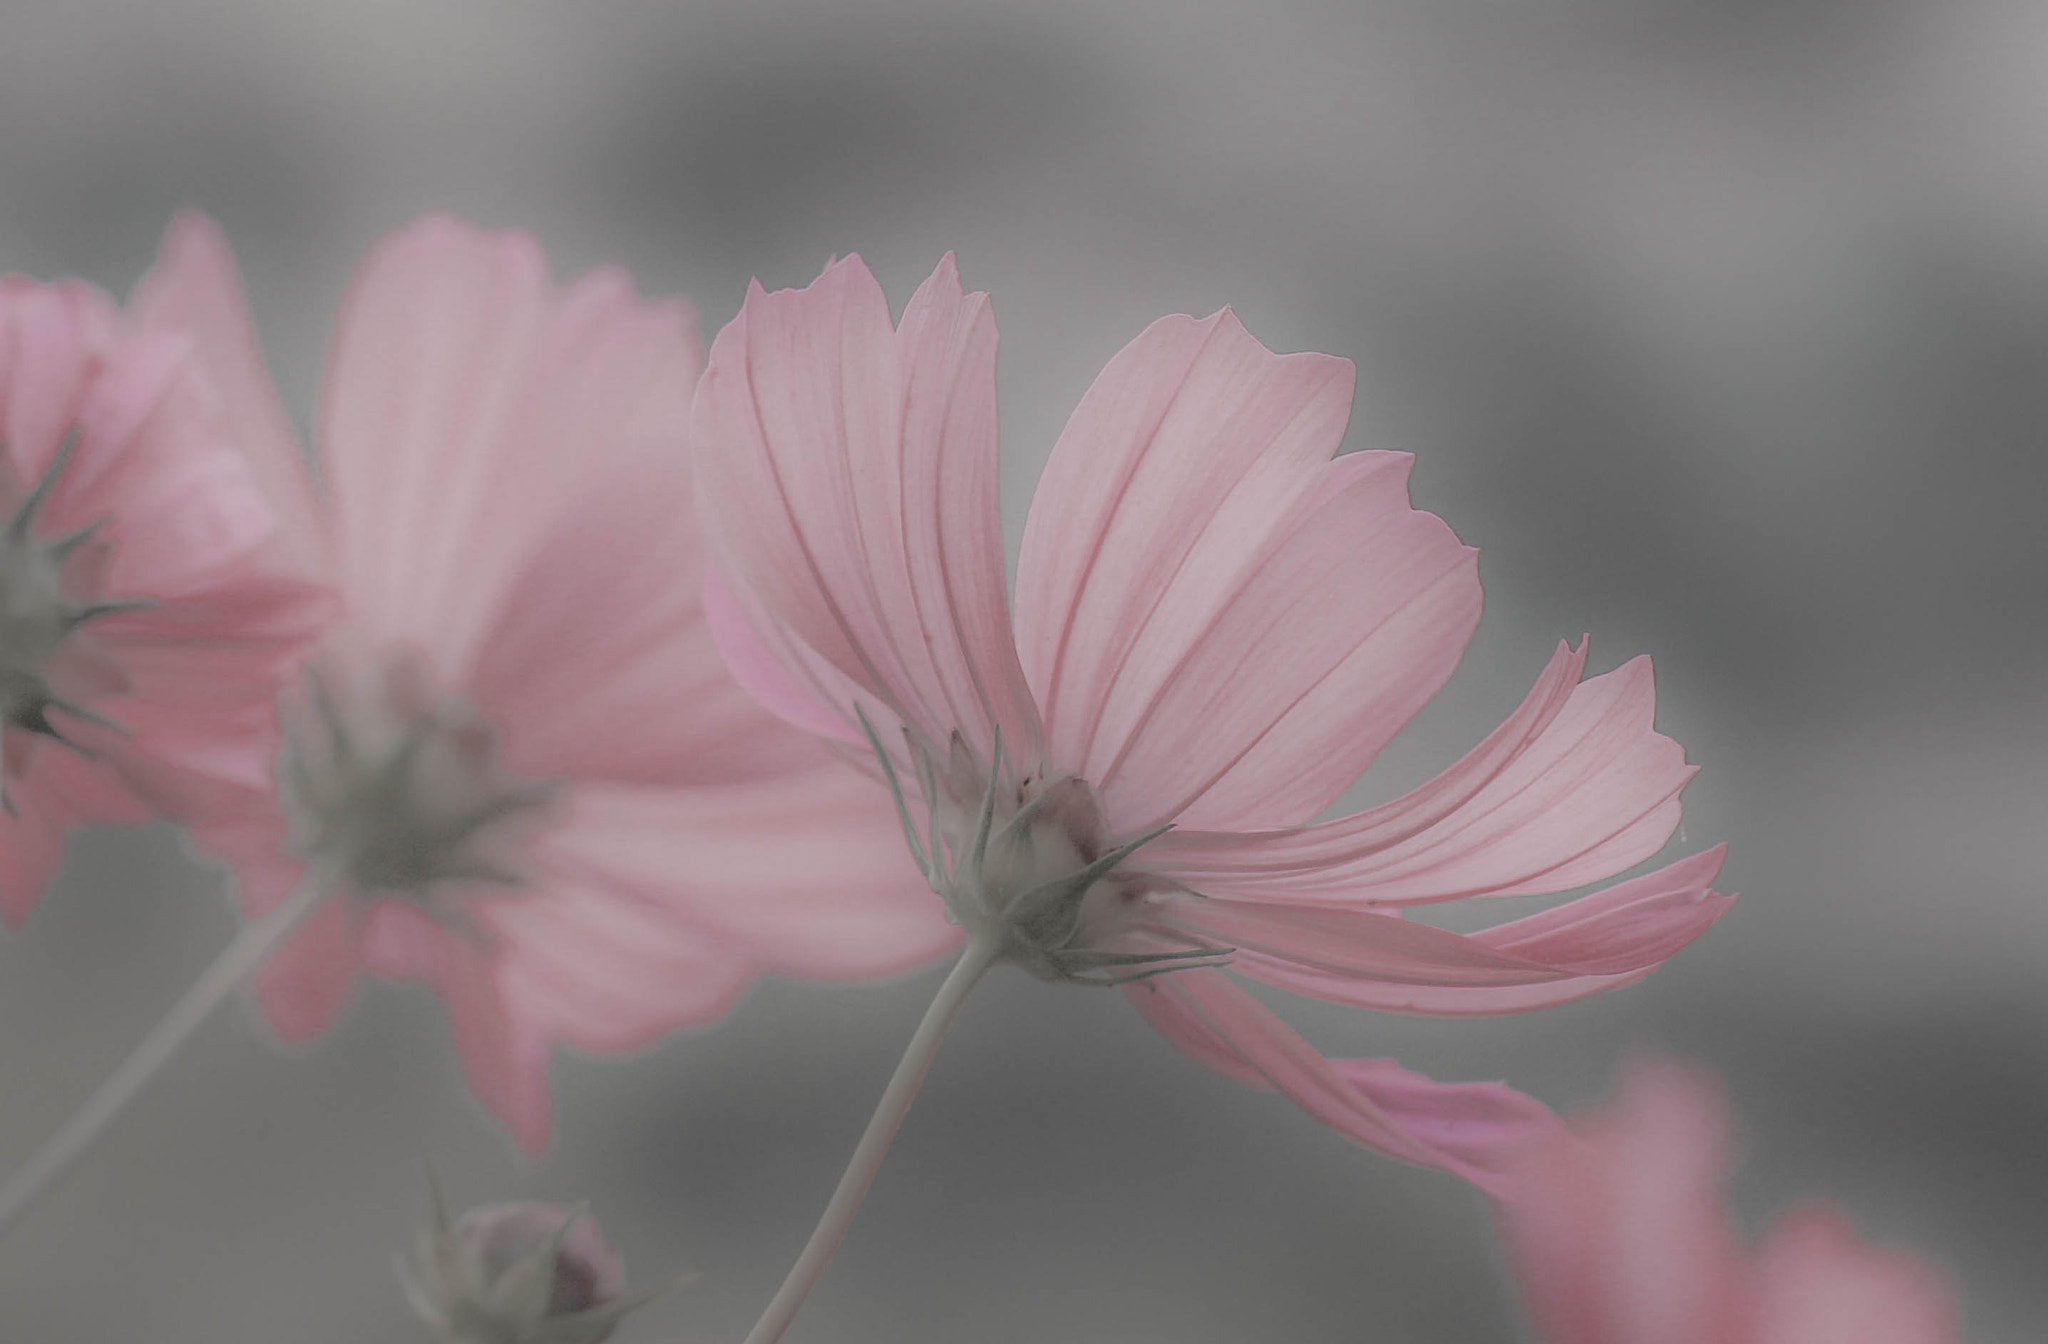 Canon EOS 70D sample photo. Mist flower photography